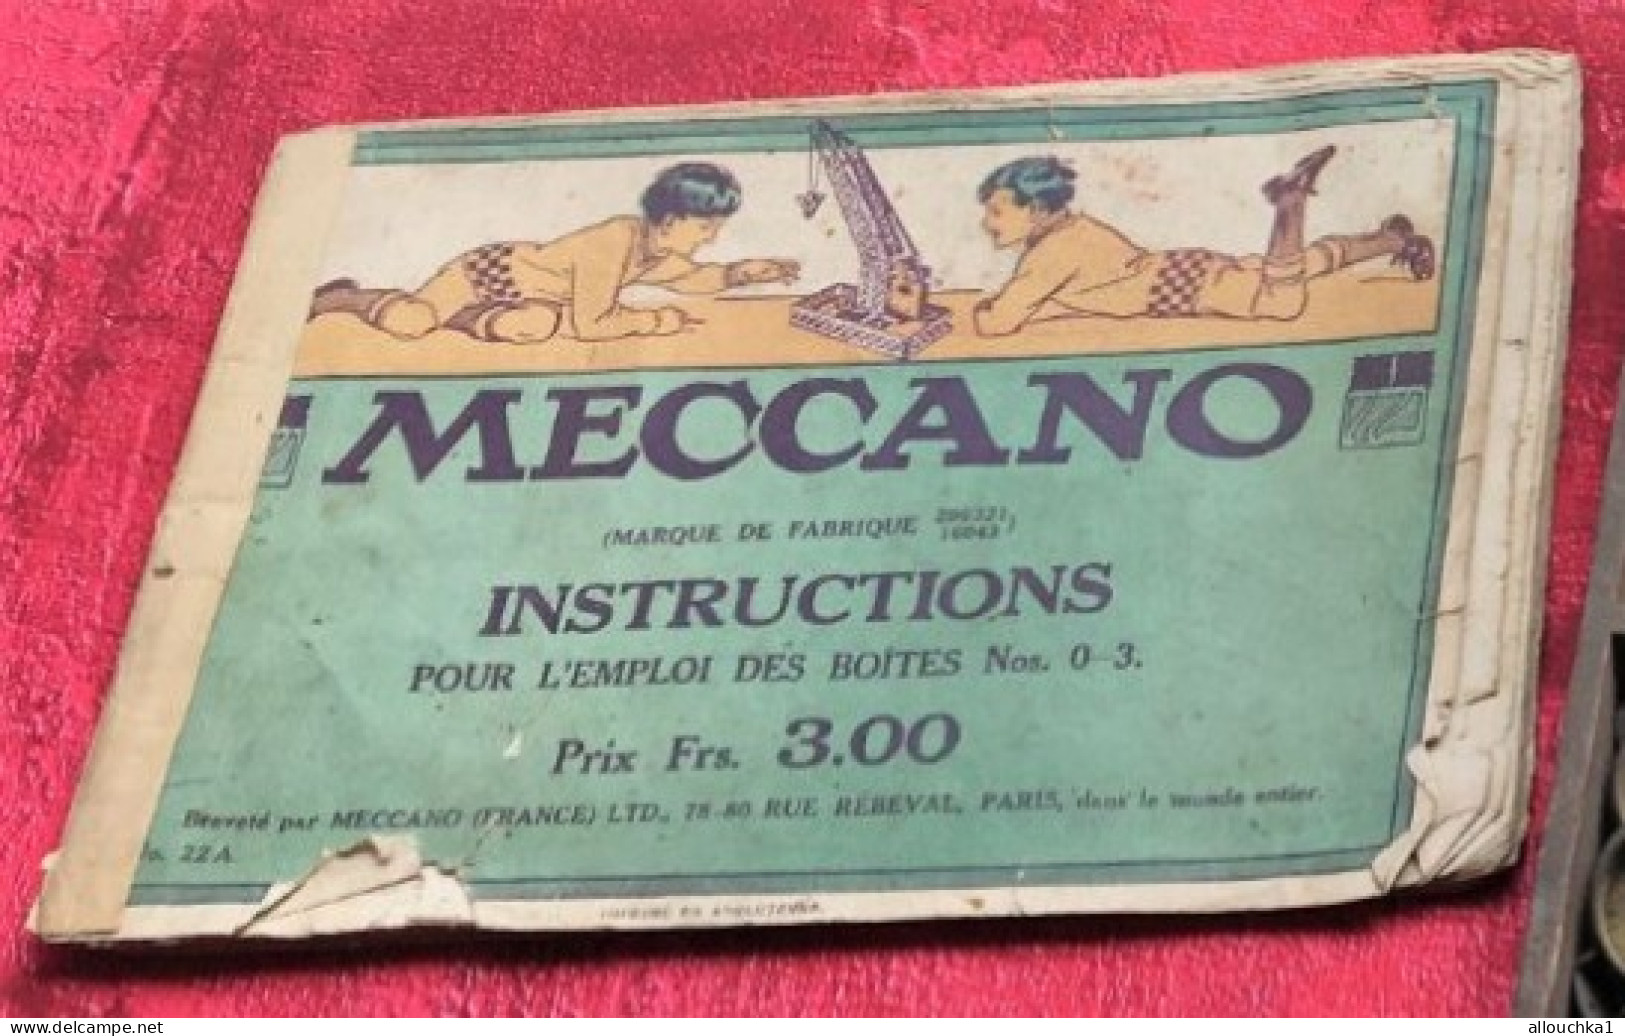 Rare-1922 -Boite en bois MECCANO Période Nickelée + Catalogue N° 0 à 3-Jouets anciens jeu construction Meccano-pièces